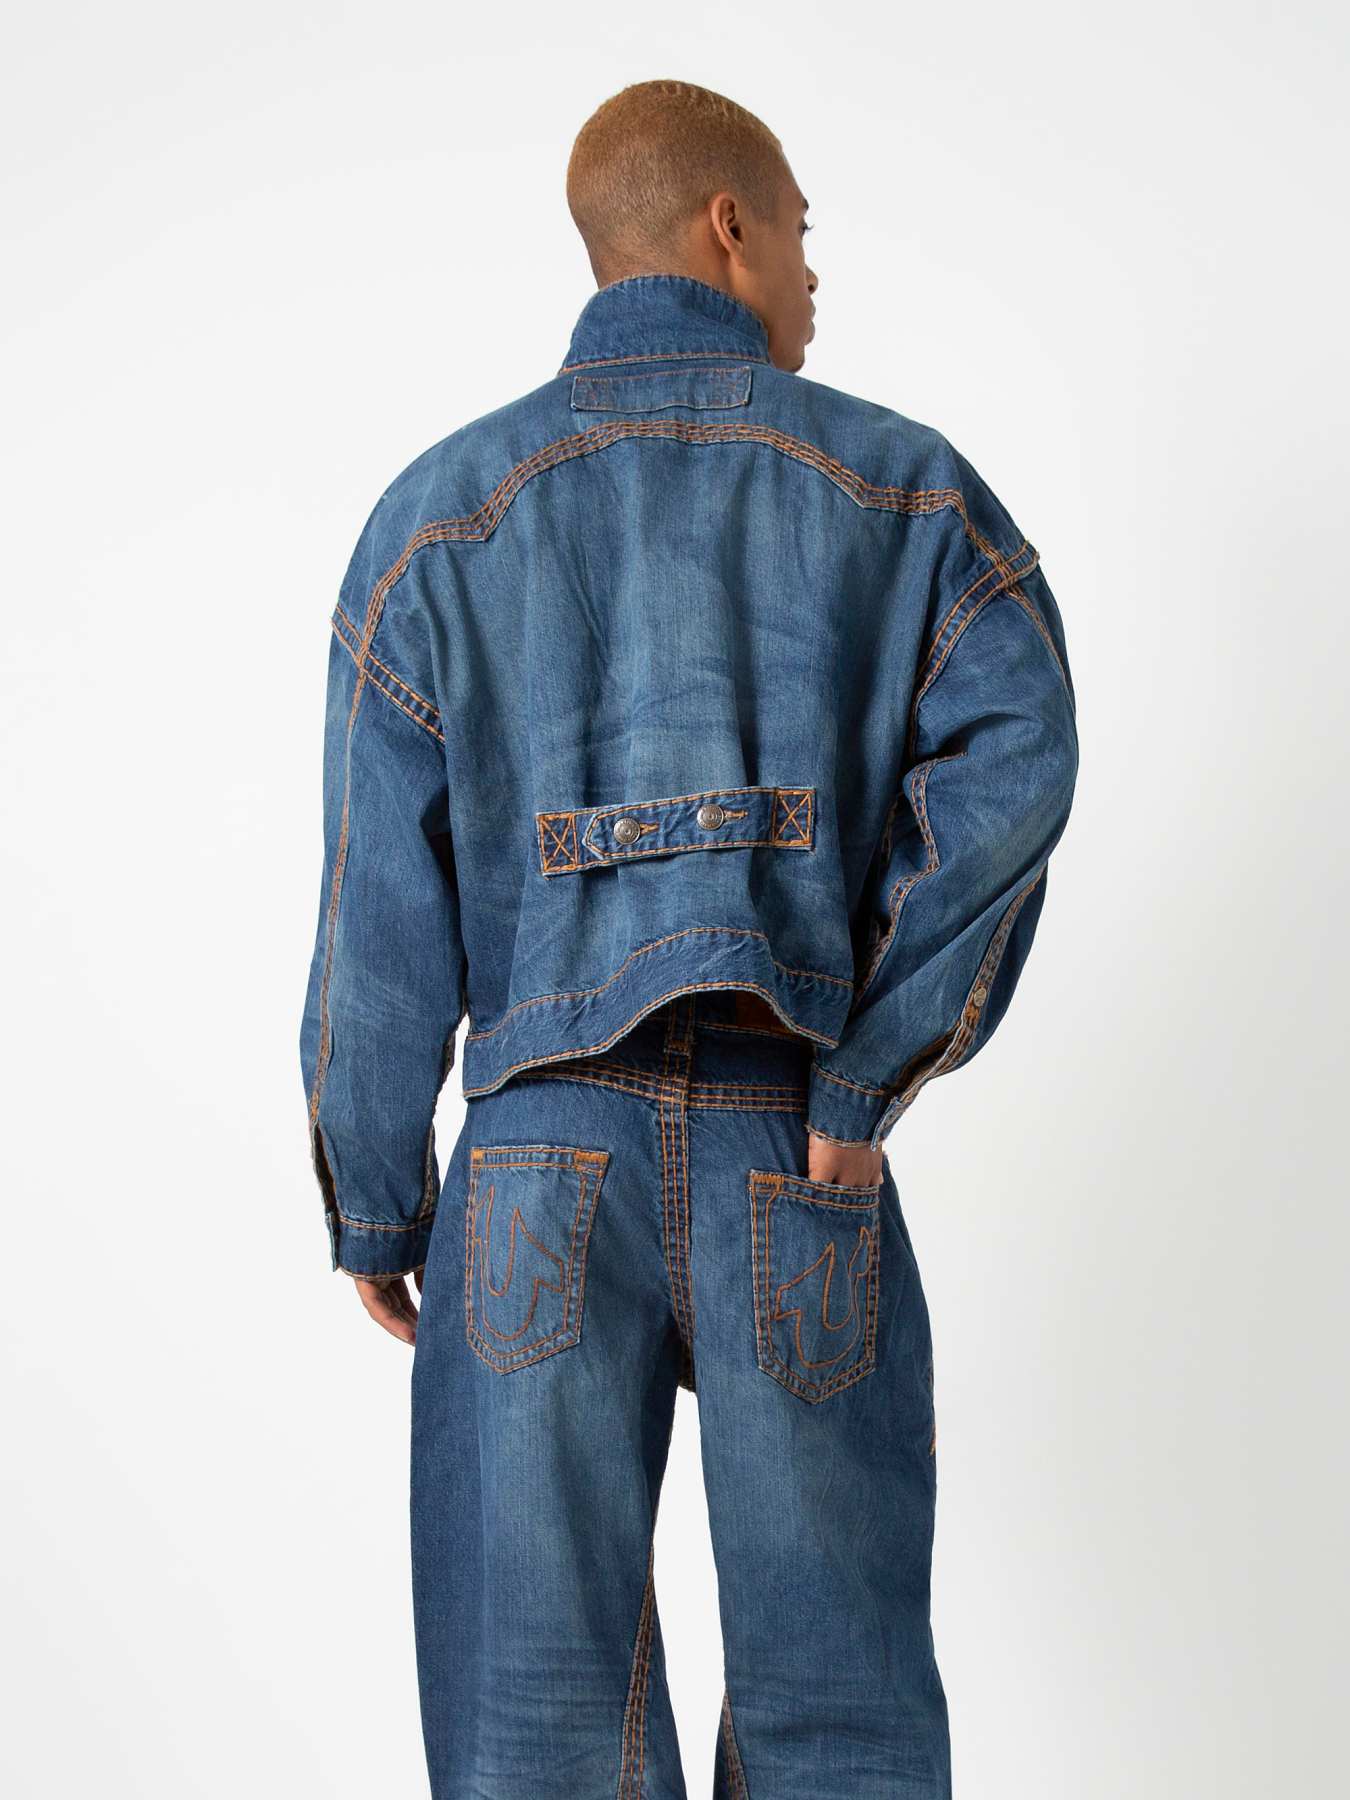 Men's Jean Sweatshirt Blue, Designer Denim Jacket, Practical Big Pocket  Men's Jean Sweatshirt Light Blue and Dark Blue, Gift -  Denmark